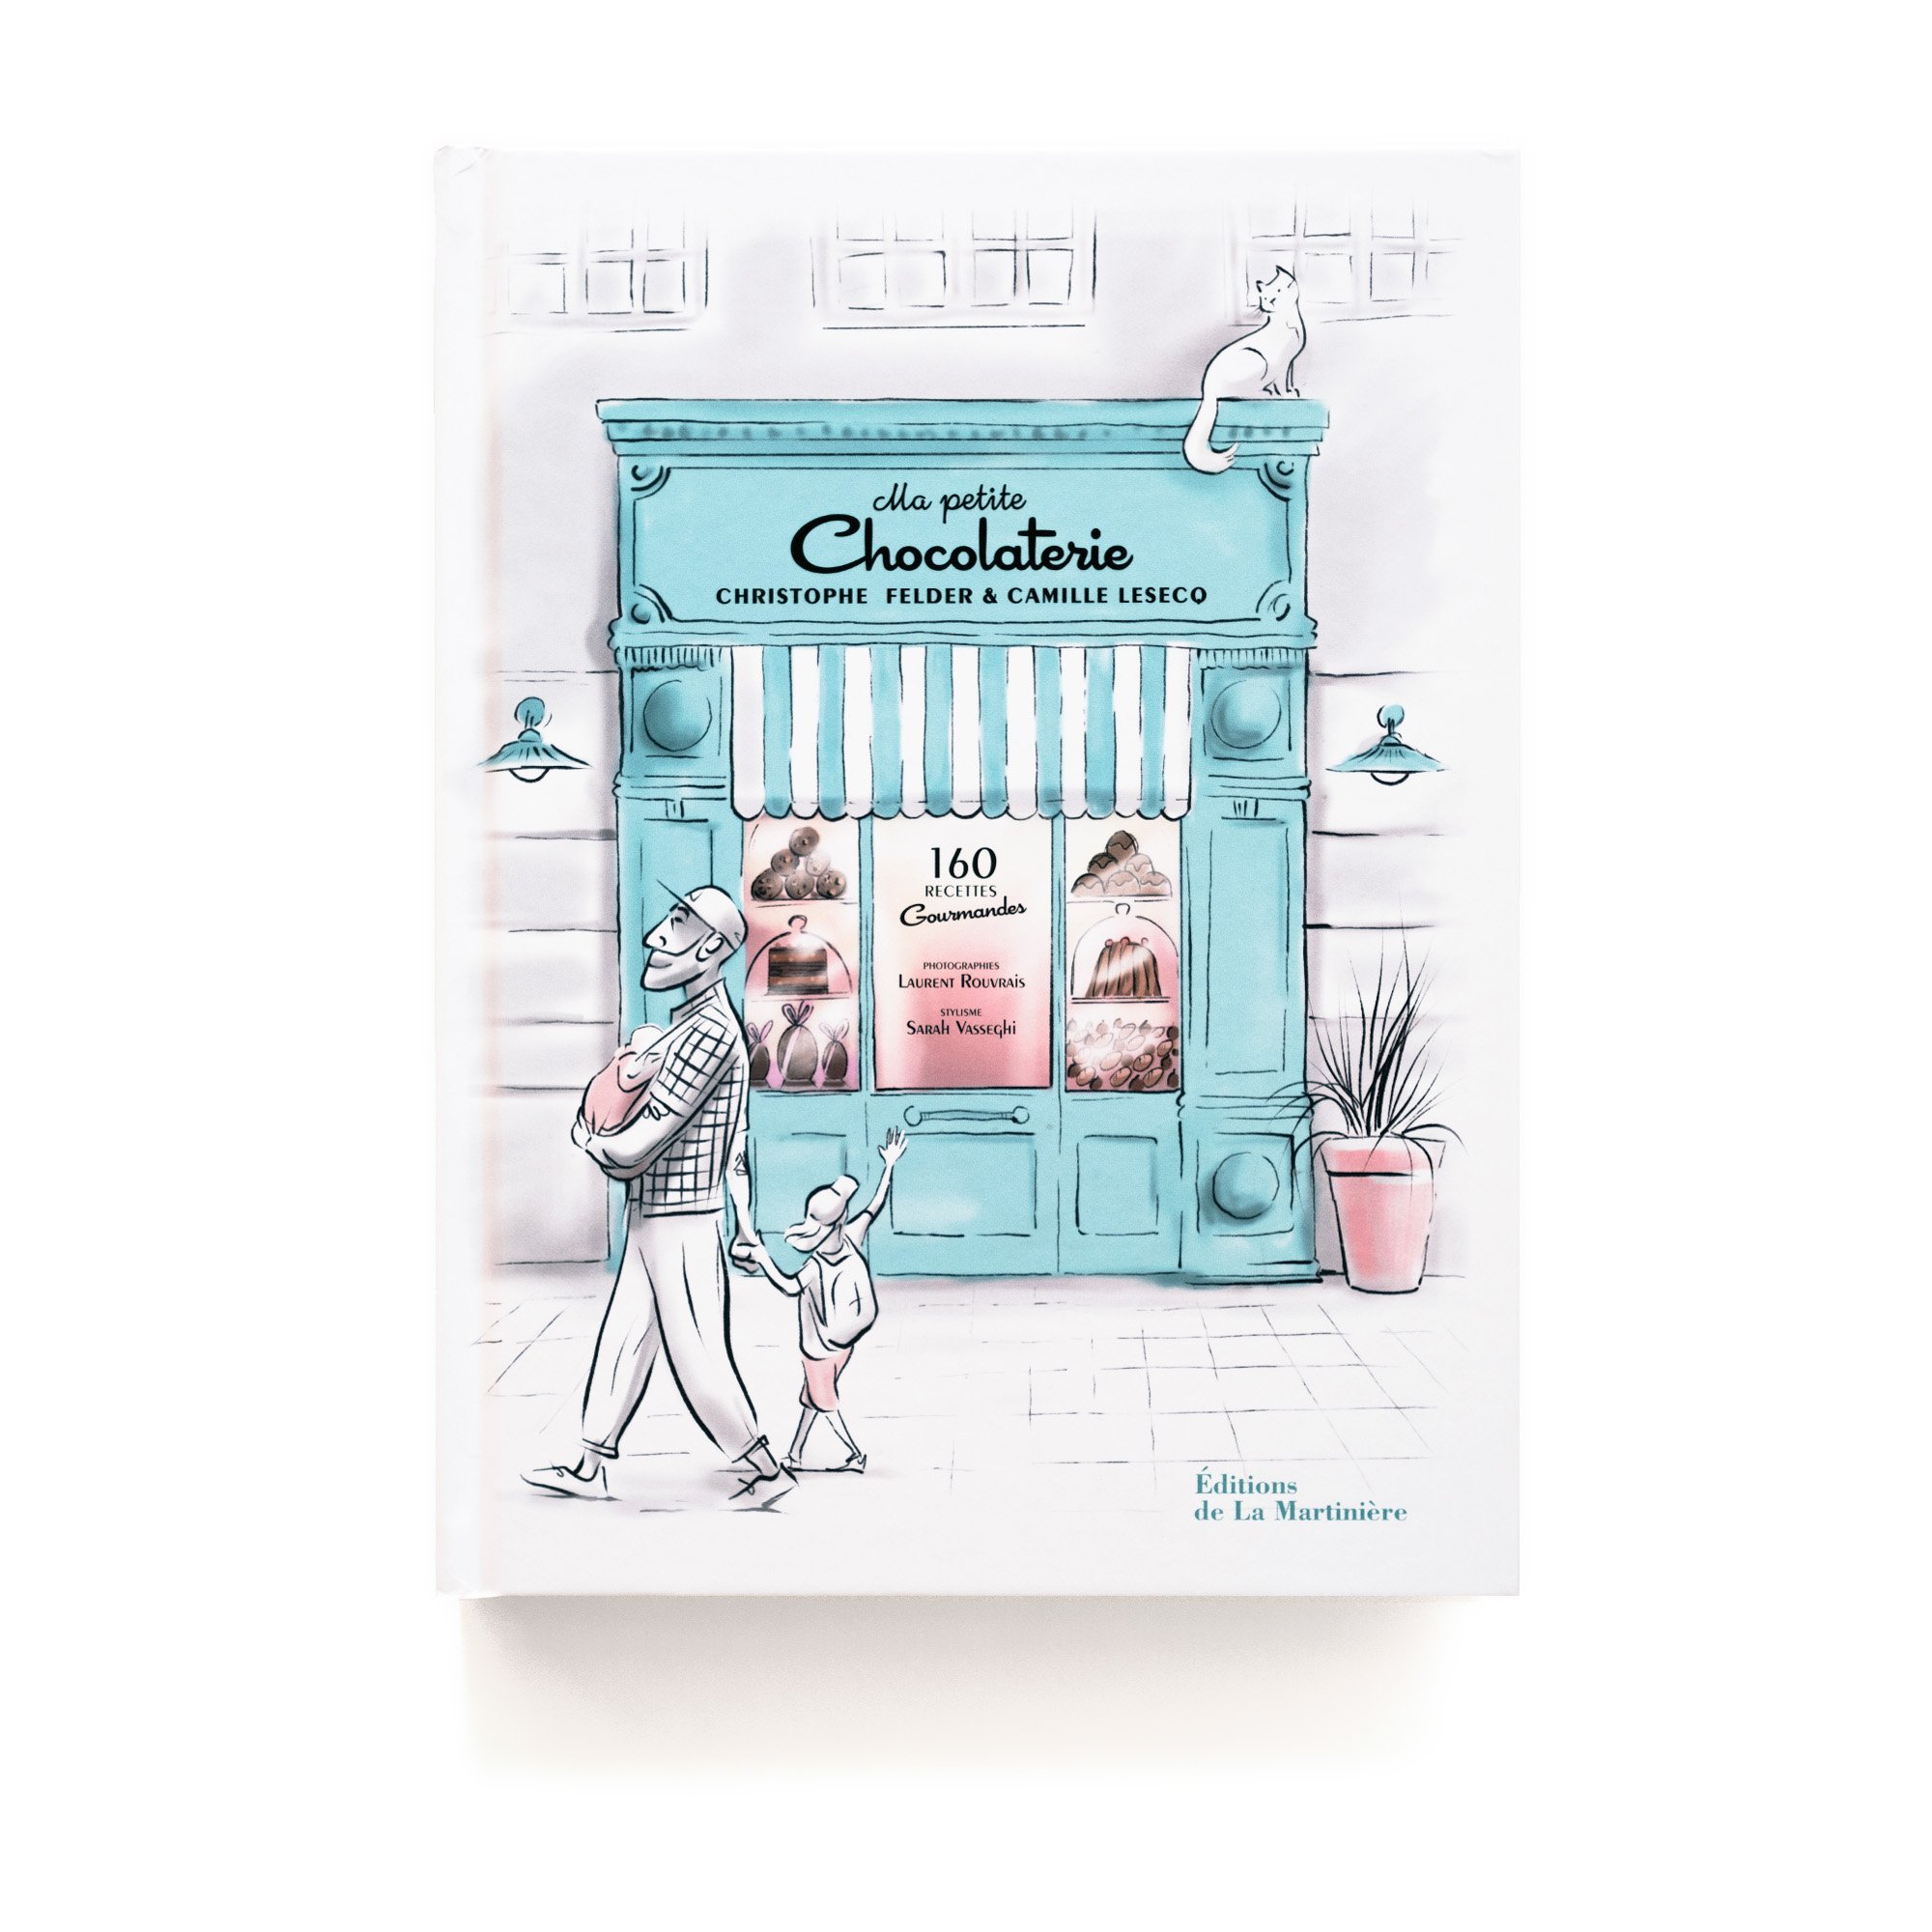   Ma Petite Chocolaterie  Christophe Felder &amp; Camille Lesecq  Éditions de La Martinière 352 pages 